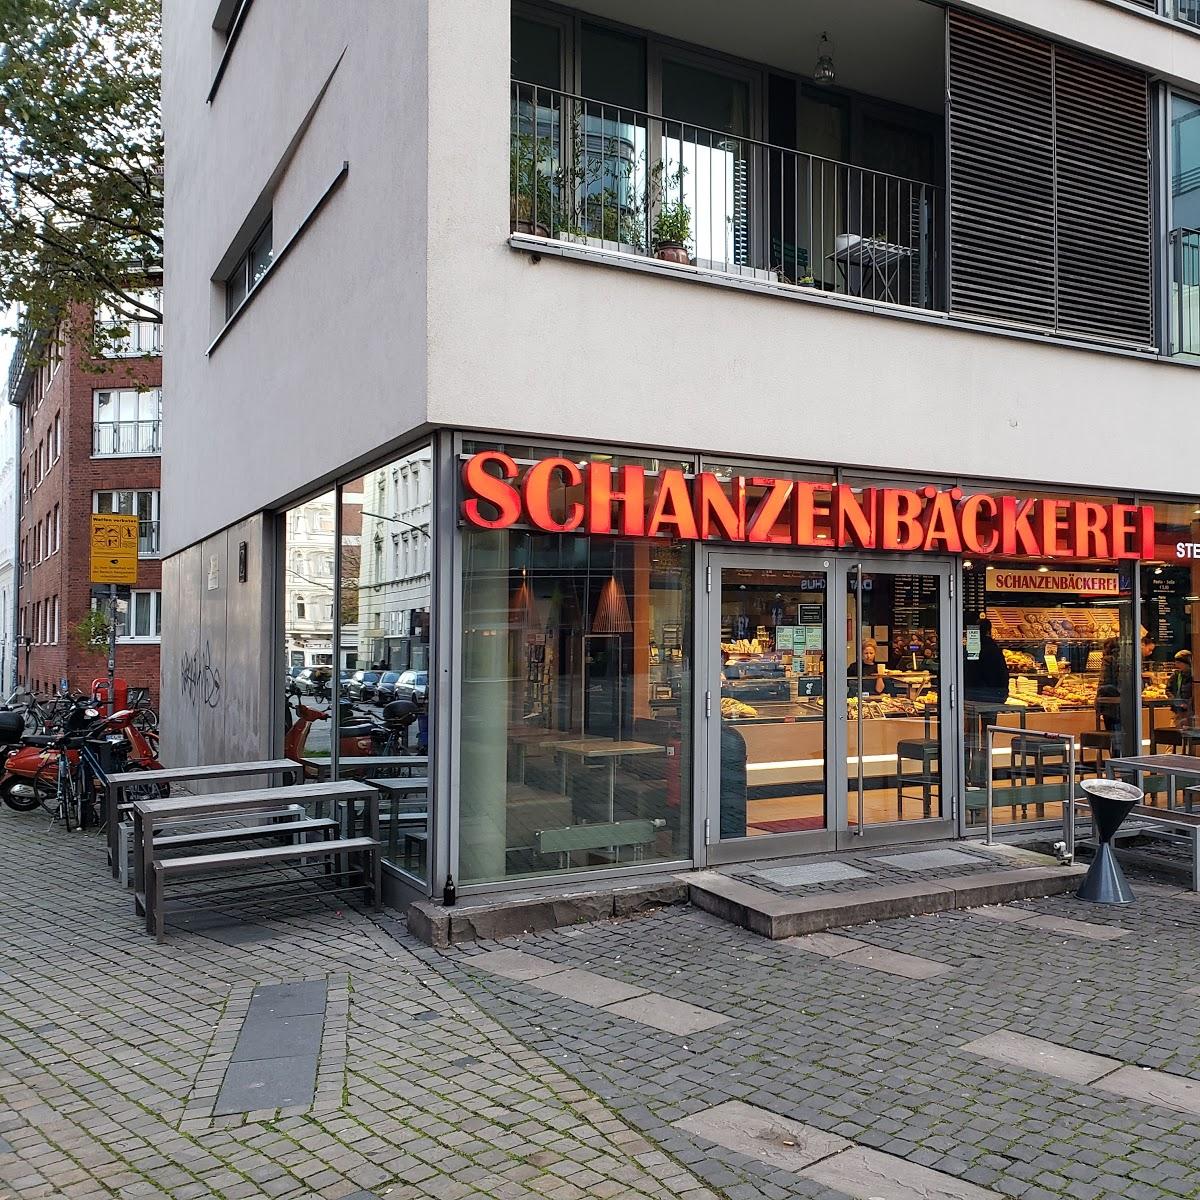 Restaurant "Schanzenbäckerei" in Hamburg